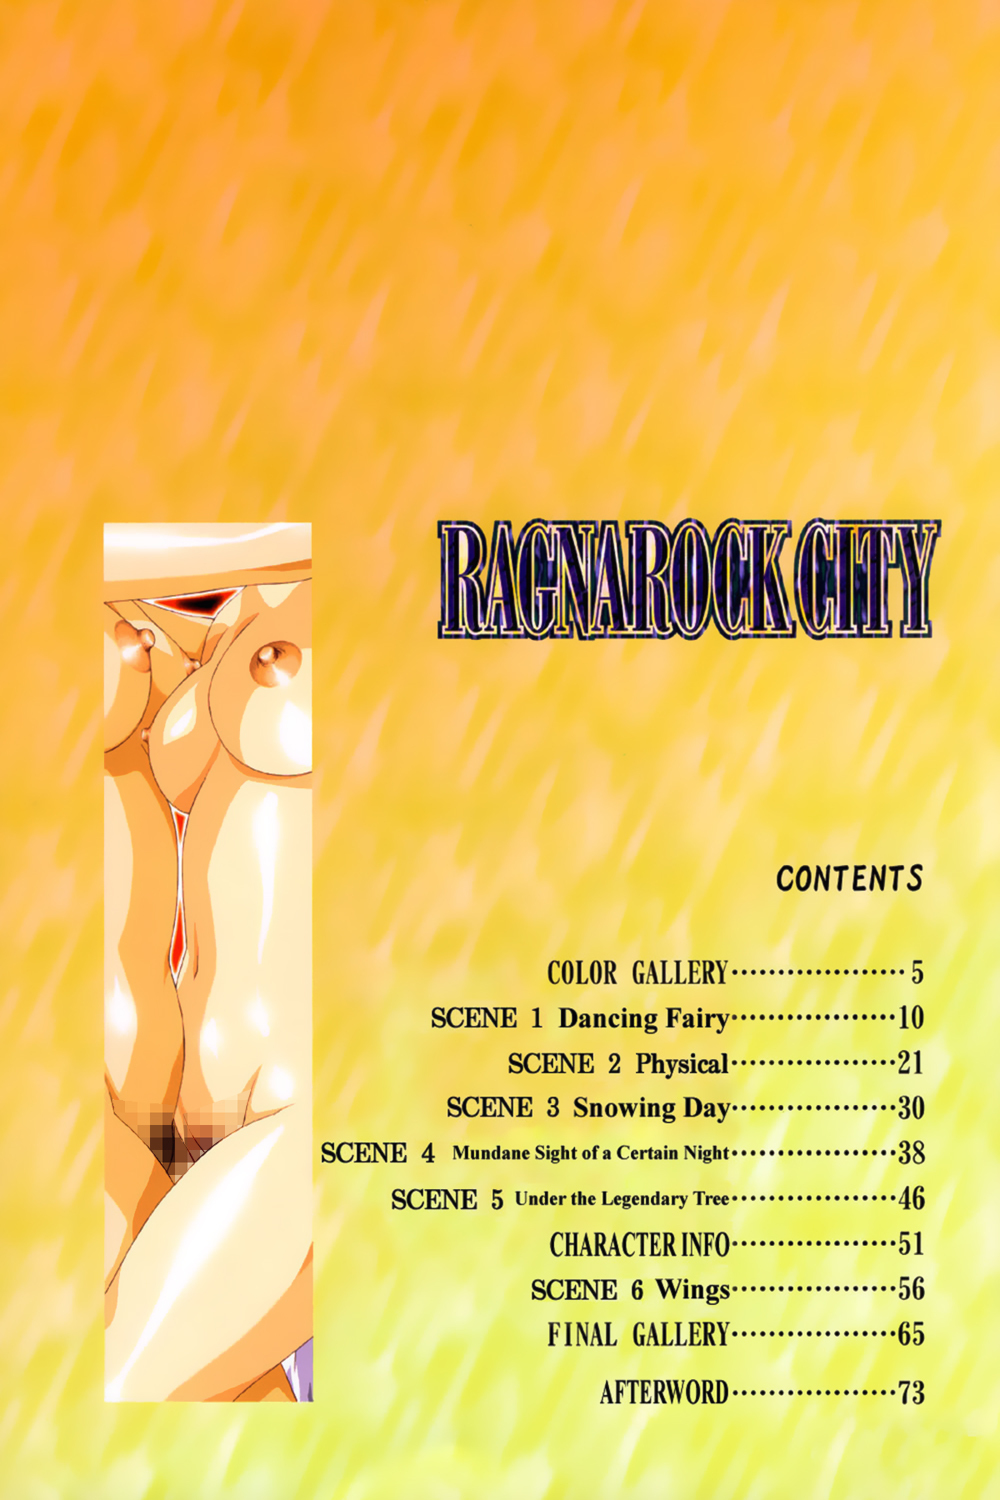 [Satoshi Urushihara] Ragnarock City [English] page 10 full